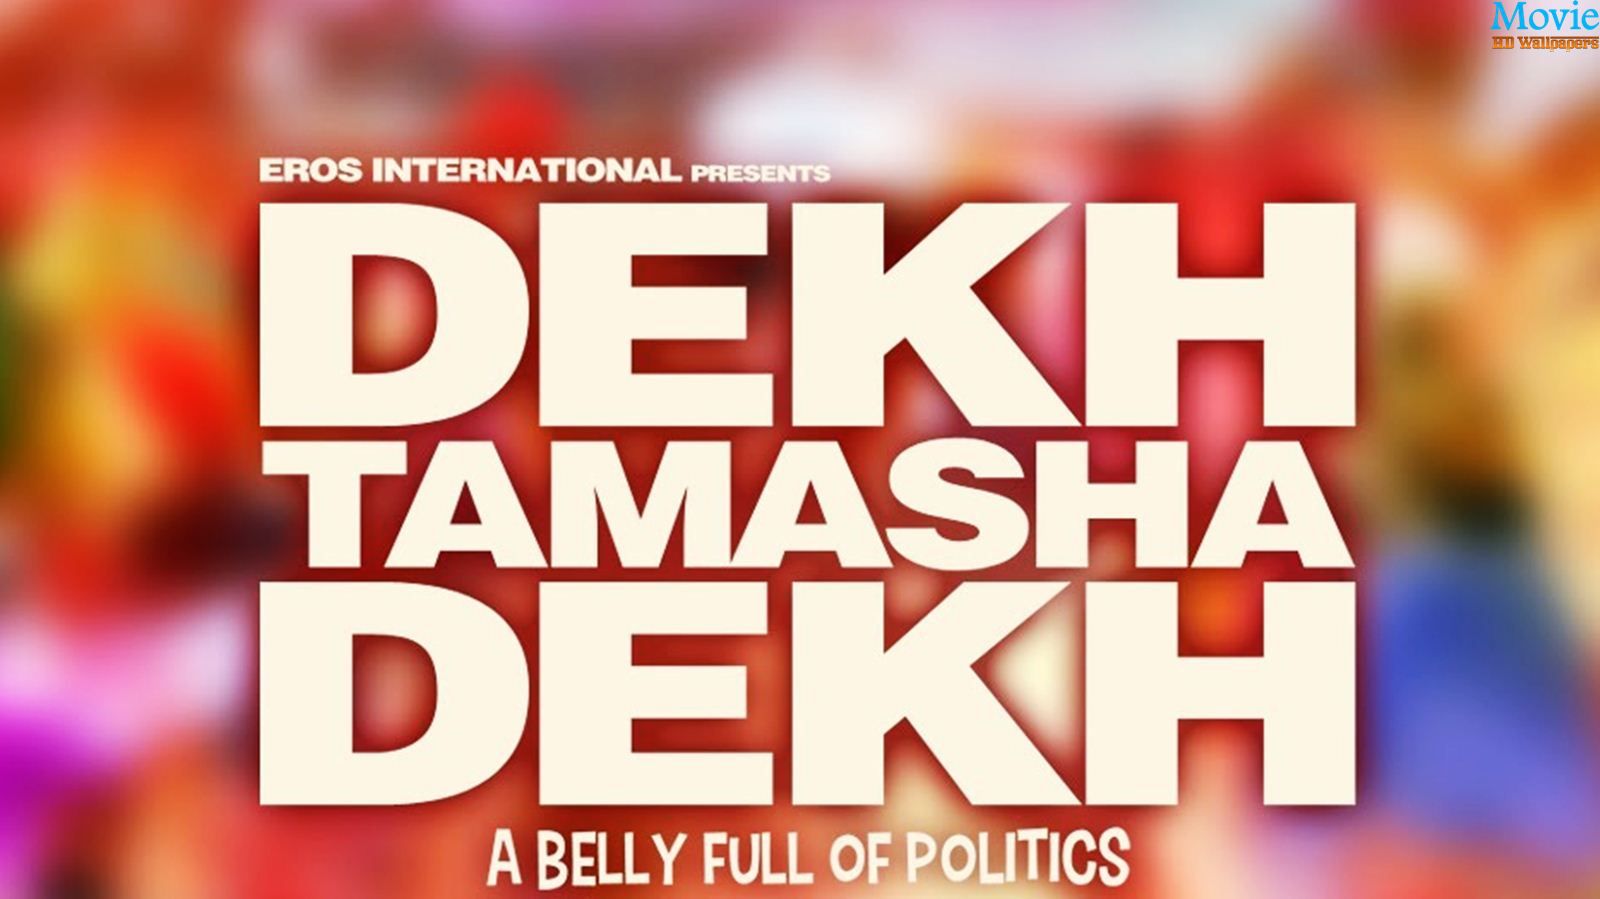 the Dekh Tamasha Dekh movie free  in hindi